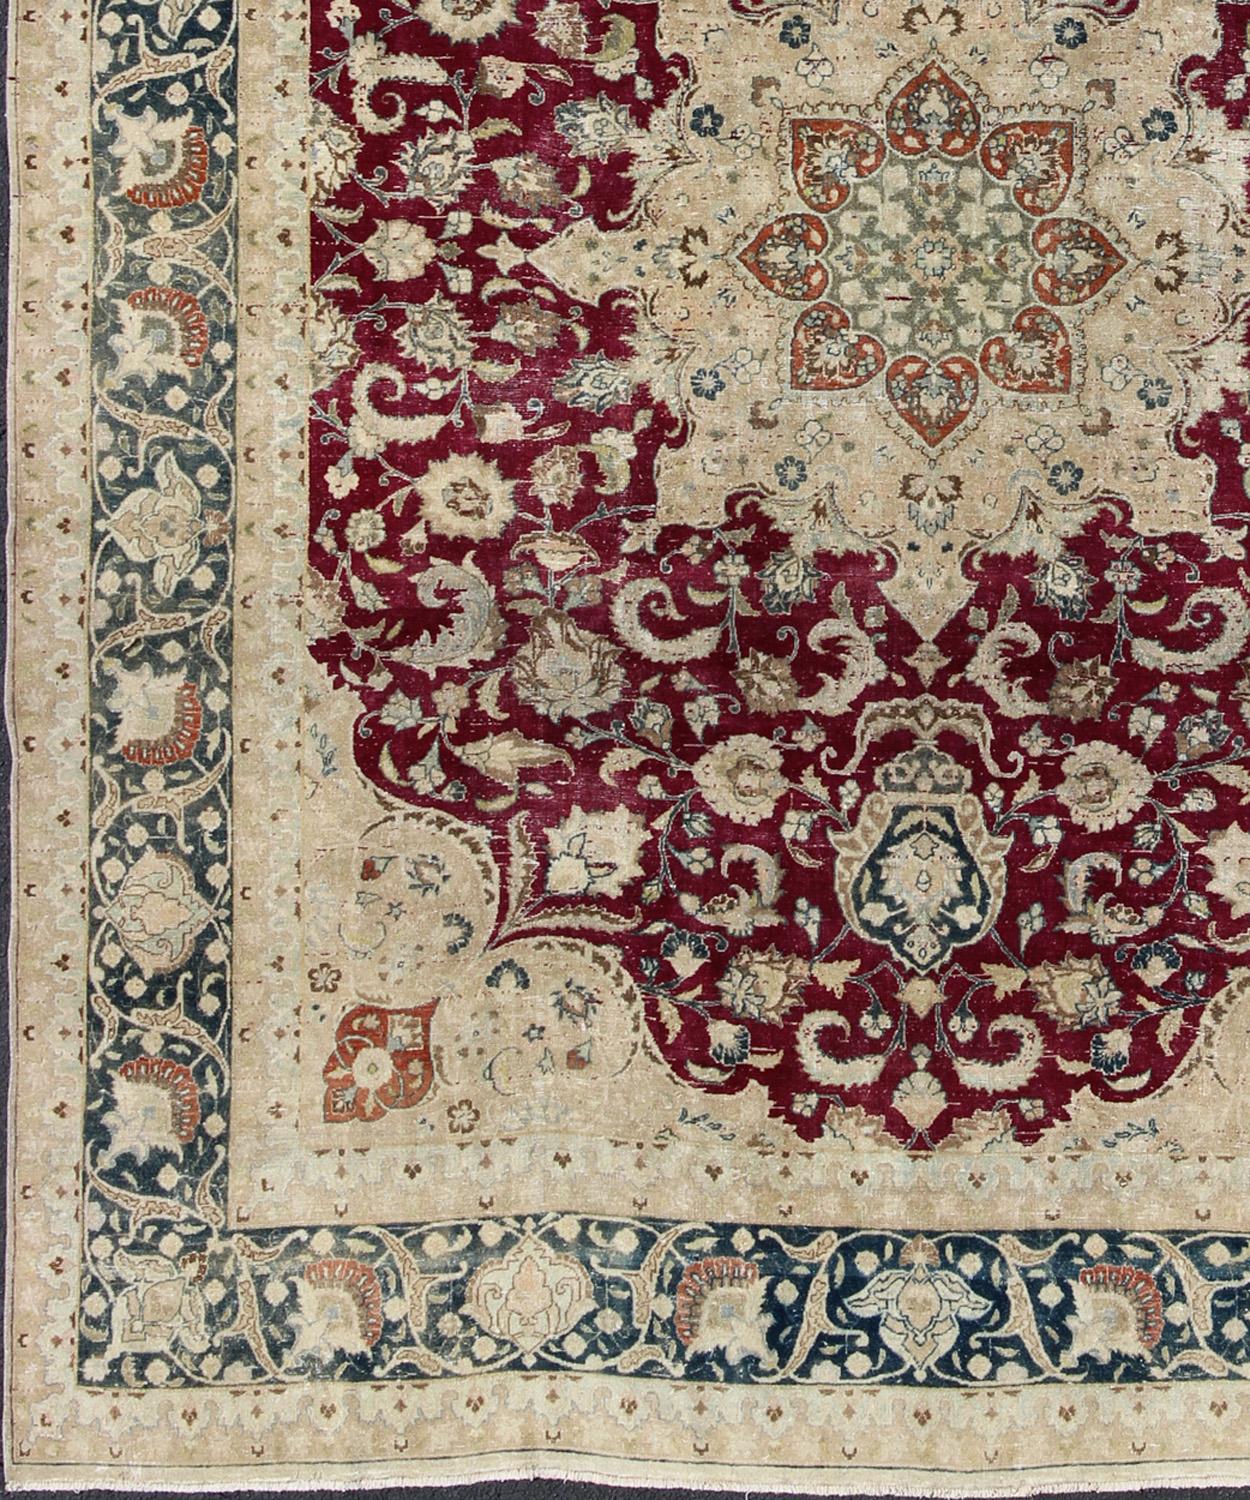 Antiker persischer Mashad-Teppich, Teppich DSP-MKN380KS, Herkunftsland / Typ: Iran / Maschhad, etwa Anfang des 20. Jahrhunderts.

Maße: 9'9 x 12'6.

Dieser hochdekorative und kunstvolle antike persische Maschad-Teppich zeichnet sich durch ein